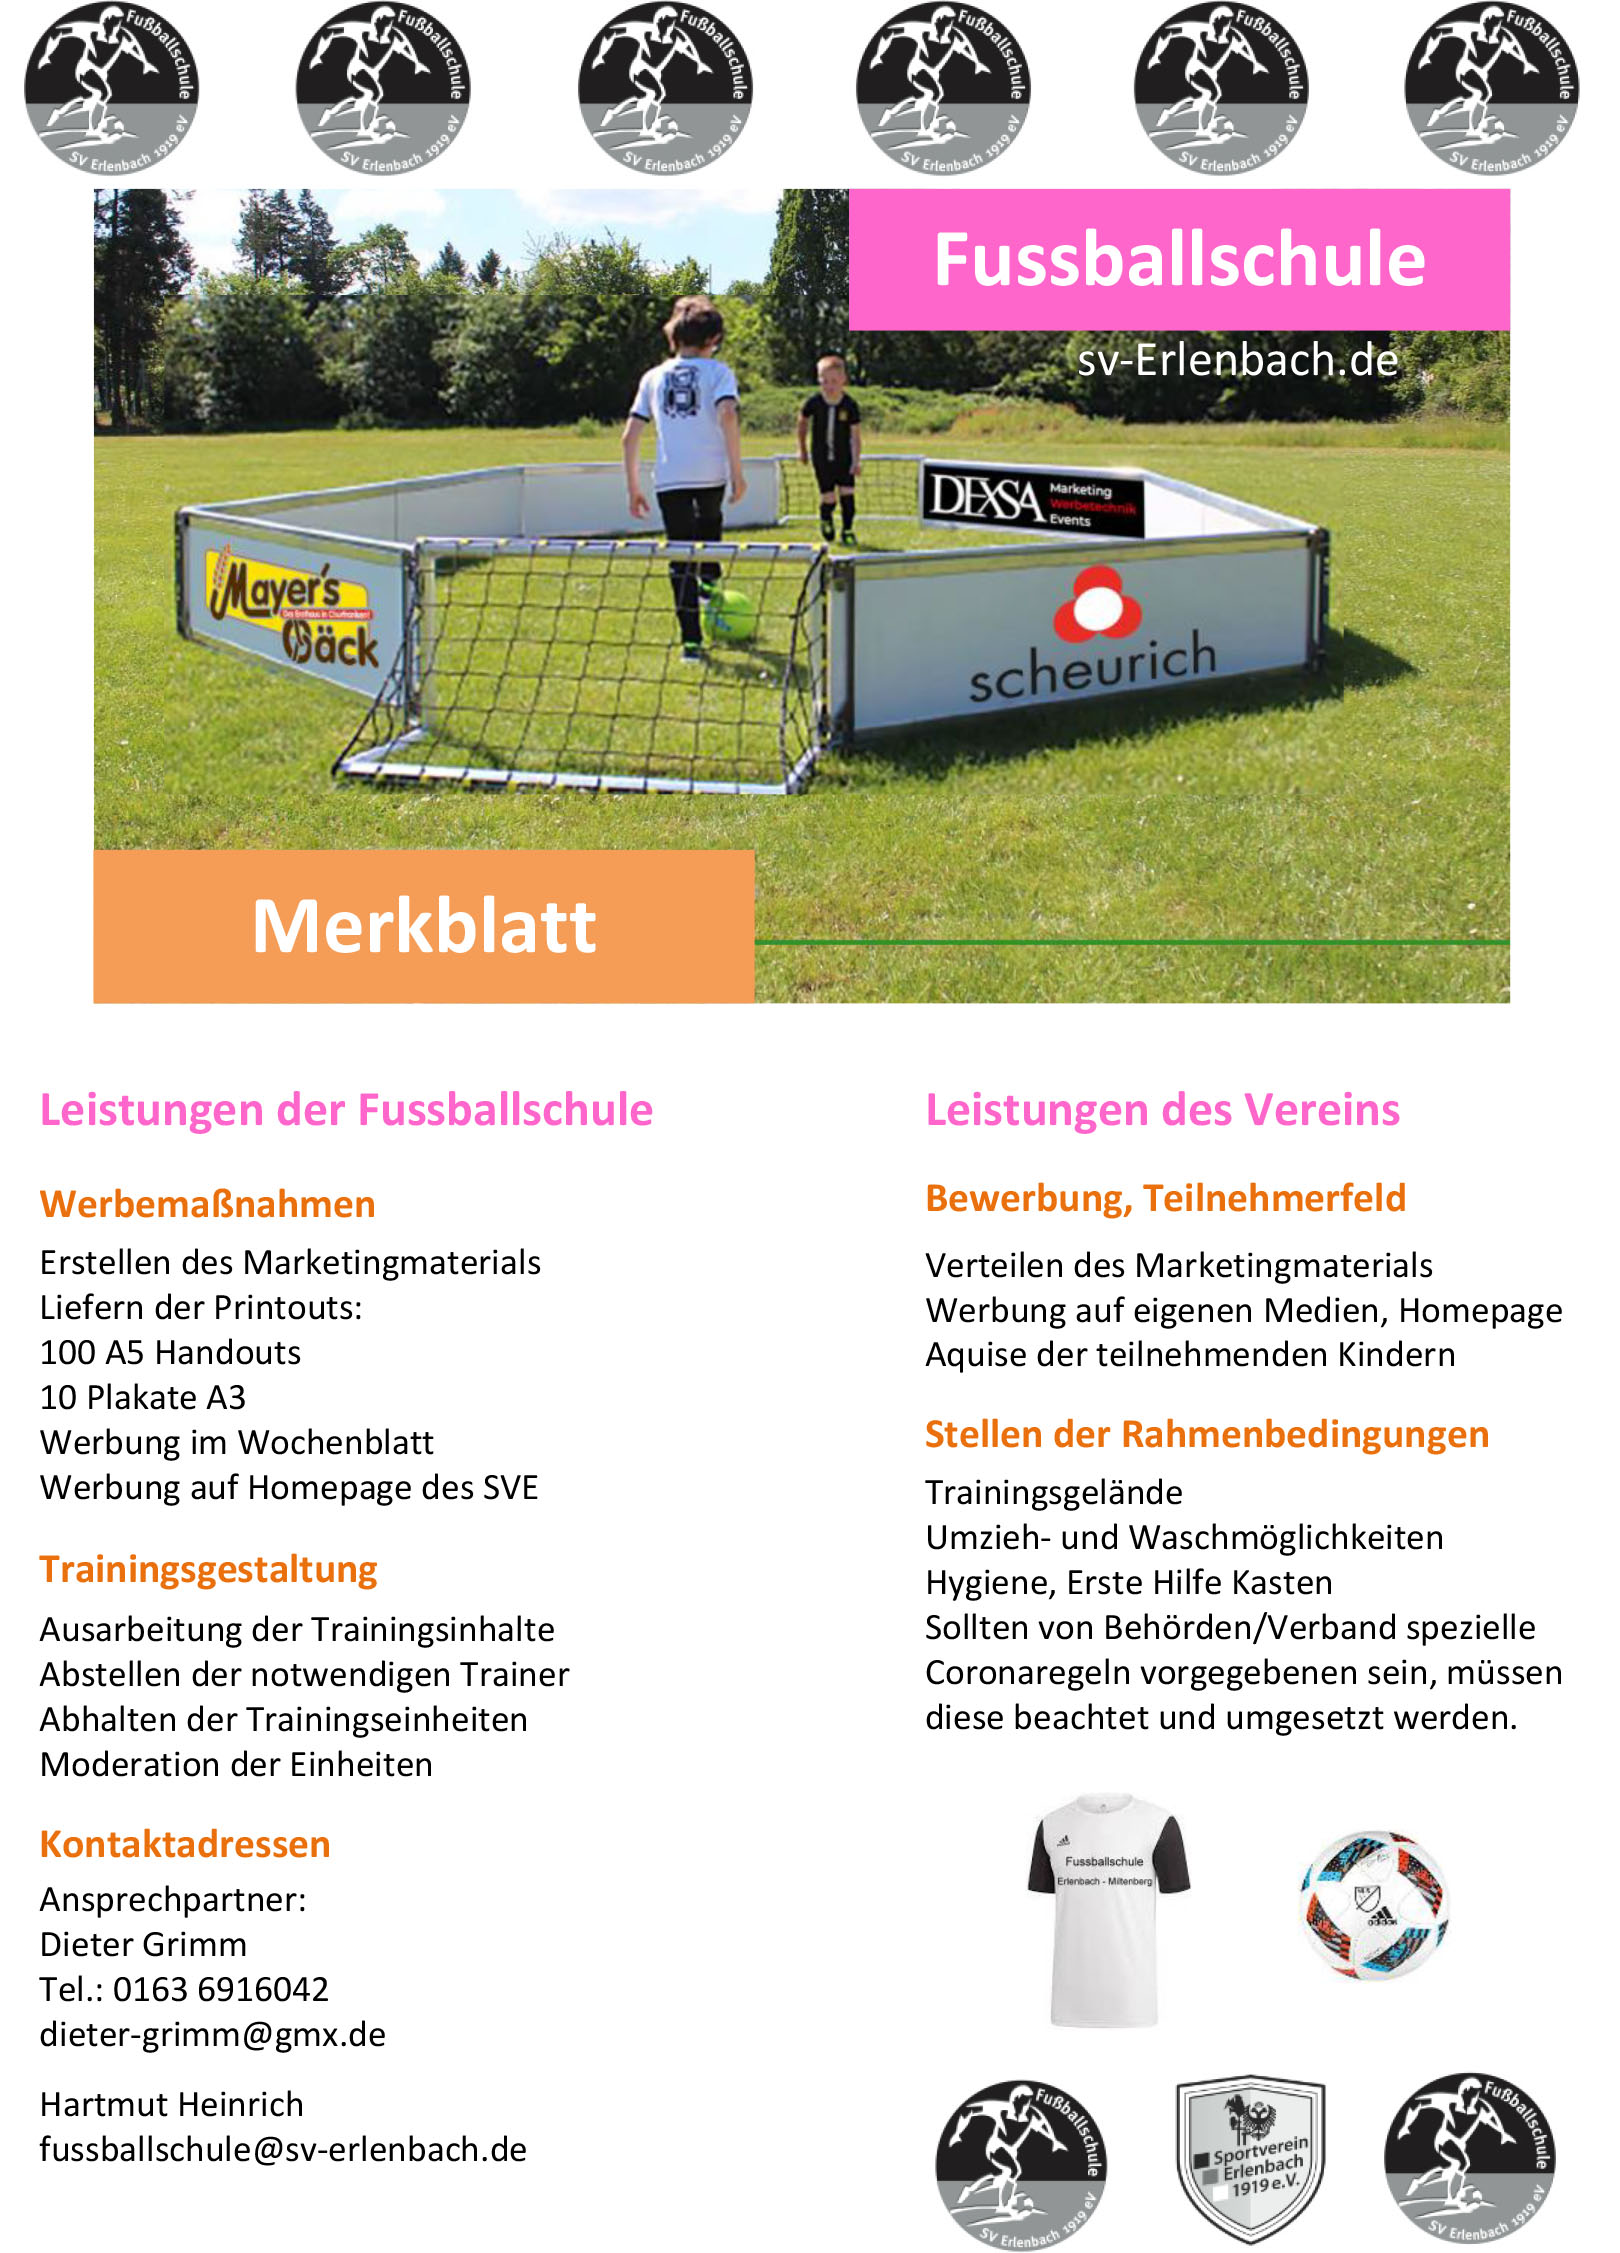 http://www.sv-erlenbach.de/wp-content/uploads/2021/08/Flyer_Fussballcamp_Sommer_2021_V1_Merkblatt.jpg